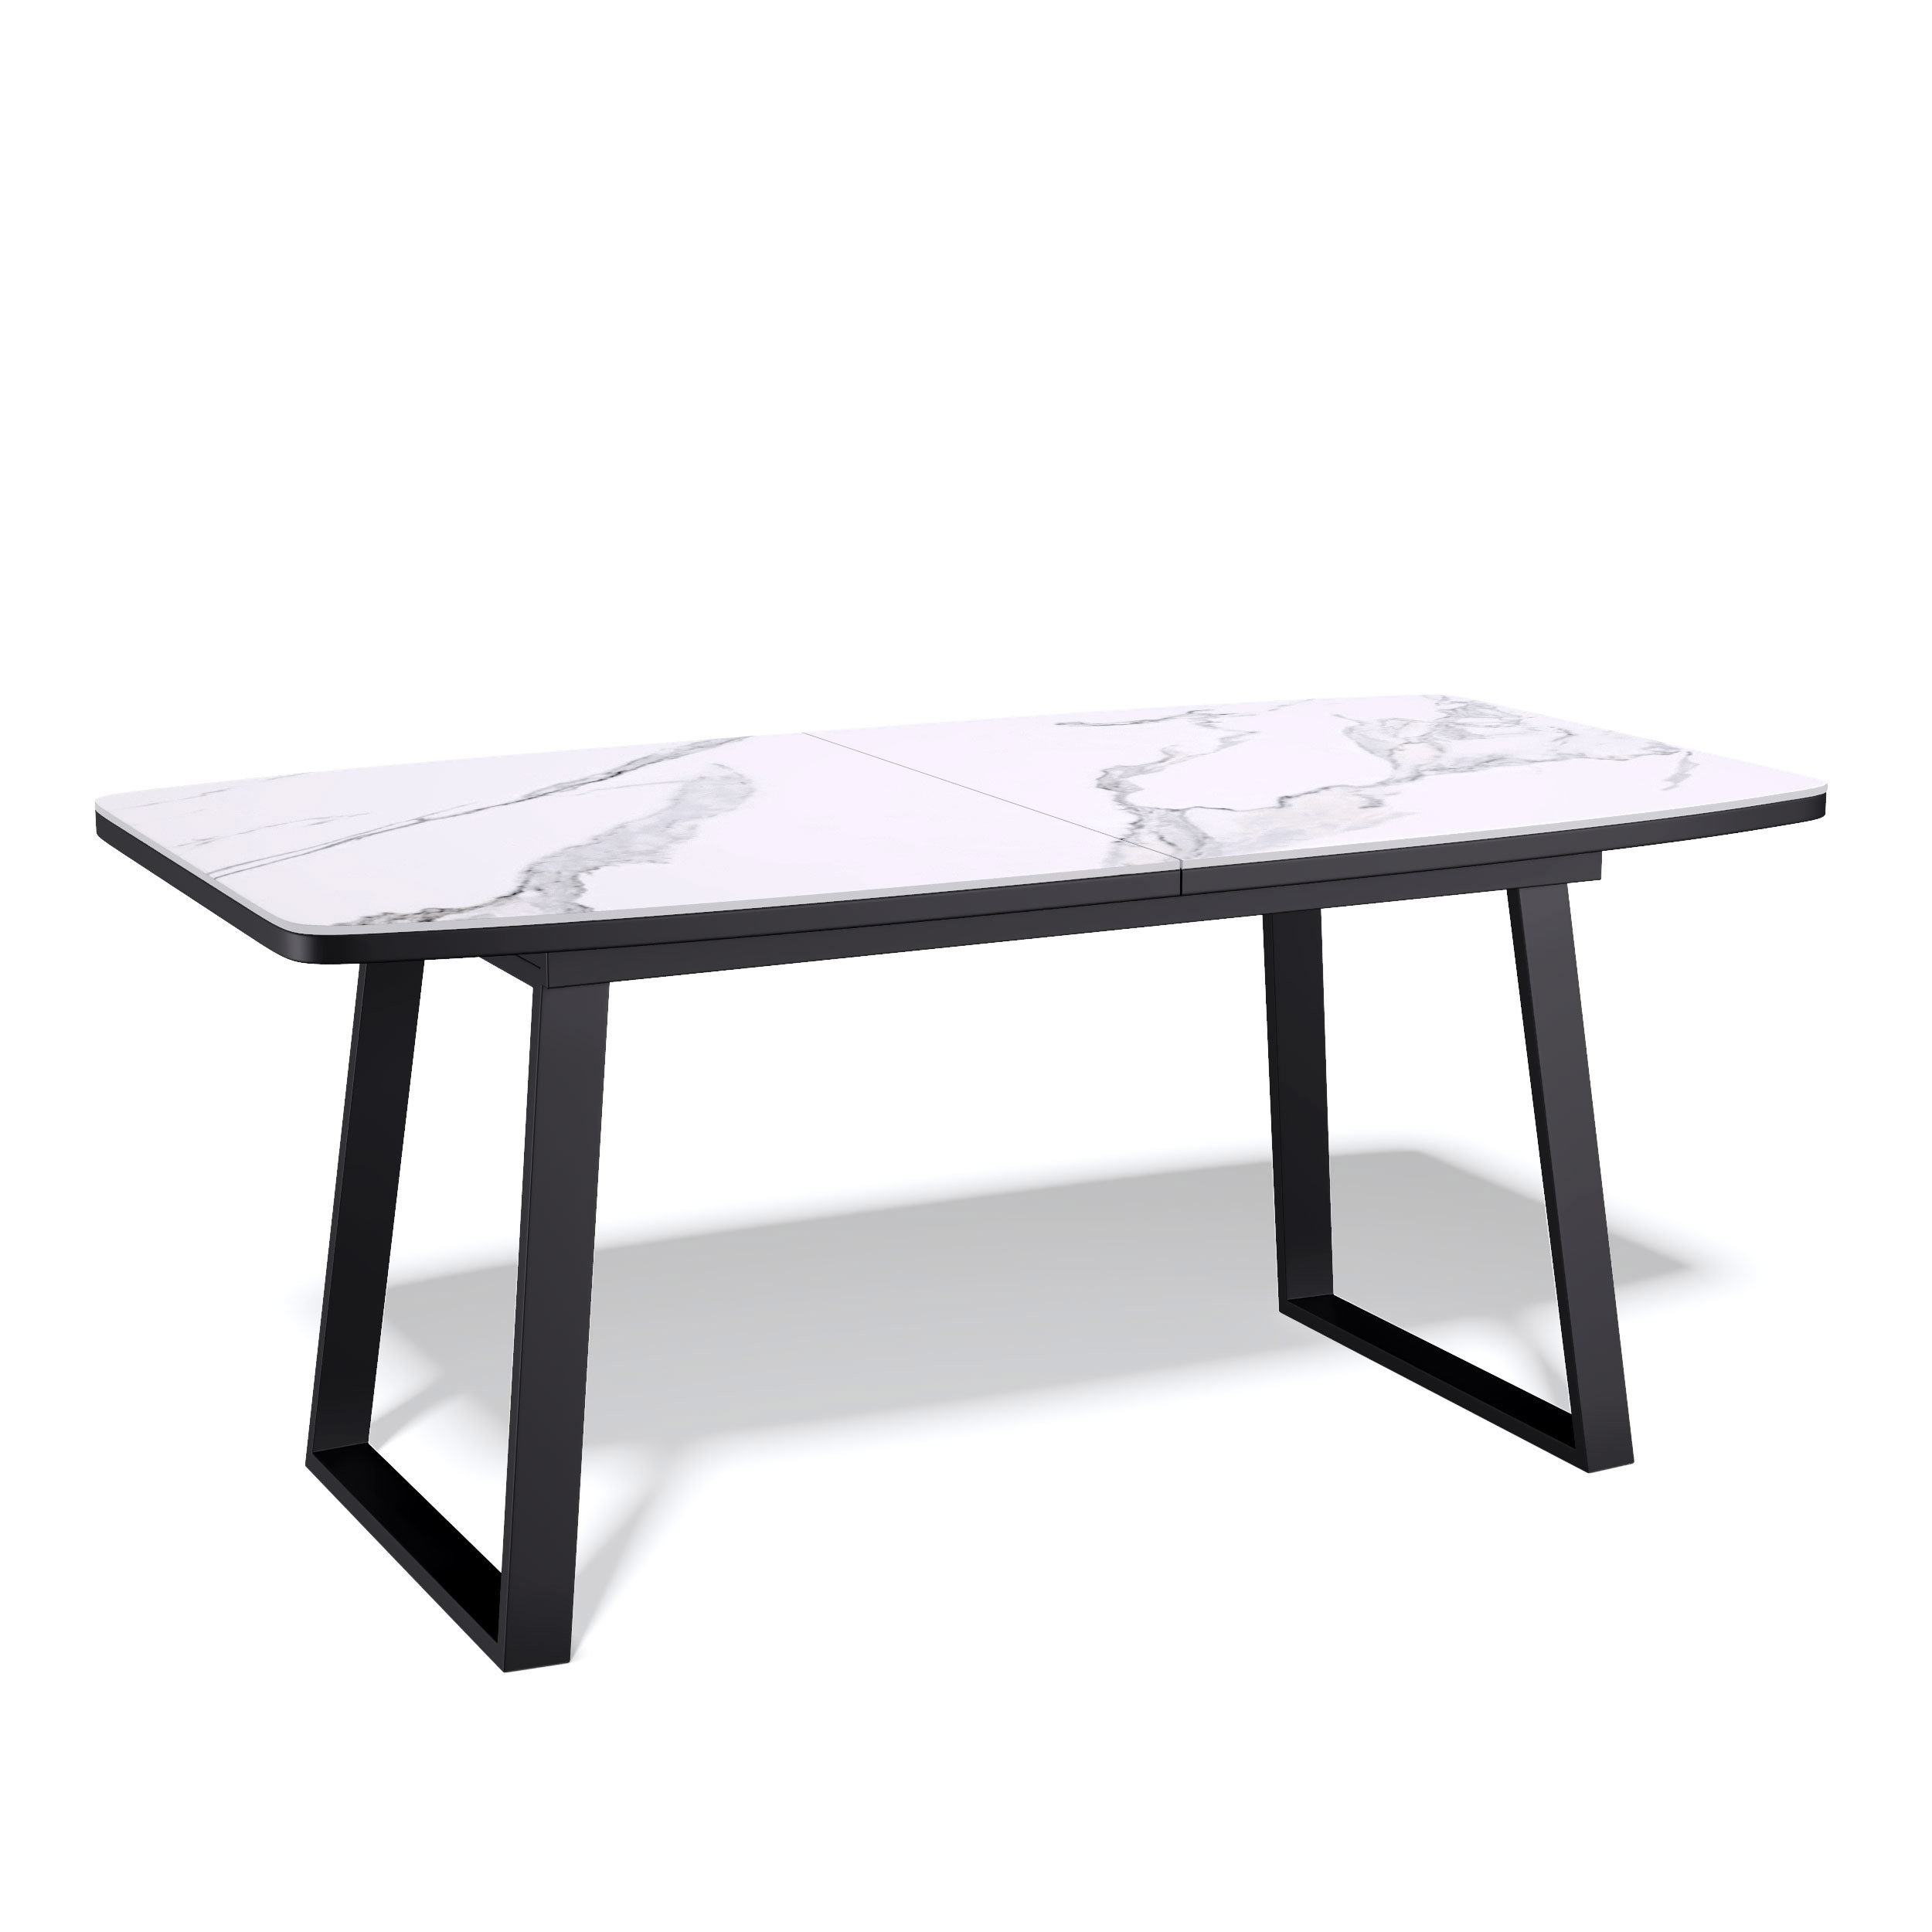 91054064 Кухонный стол прямоугольный 325176 140-180x80x76 см керамика цвет бело-черный AZ STLM-0459693 KENNER